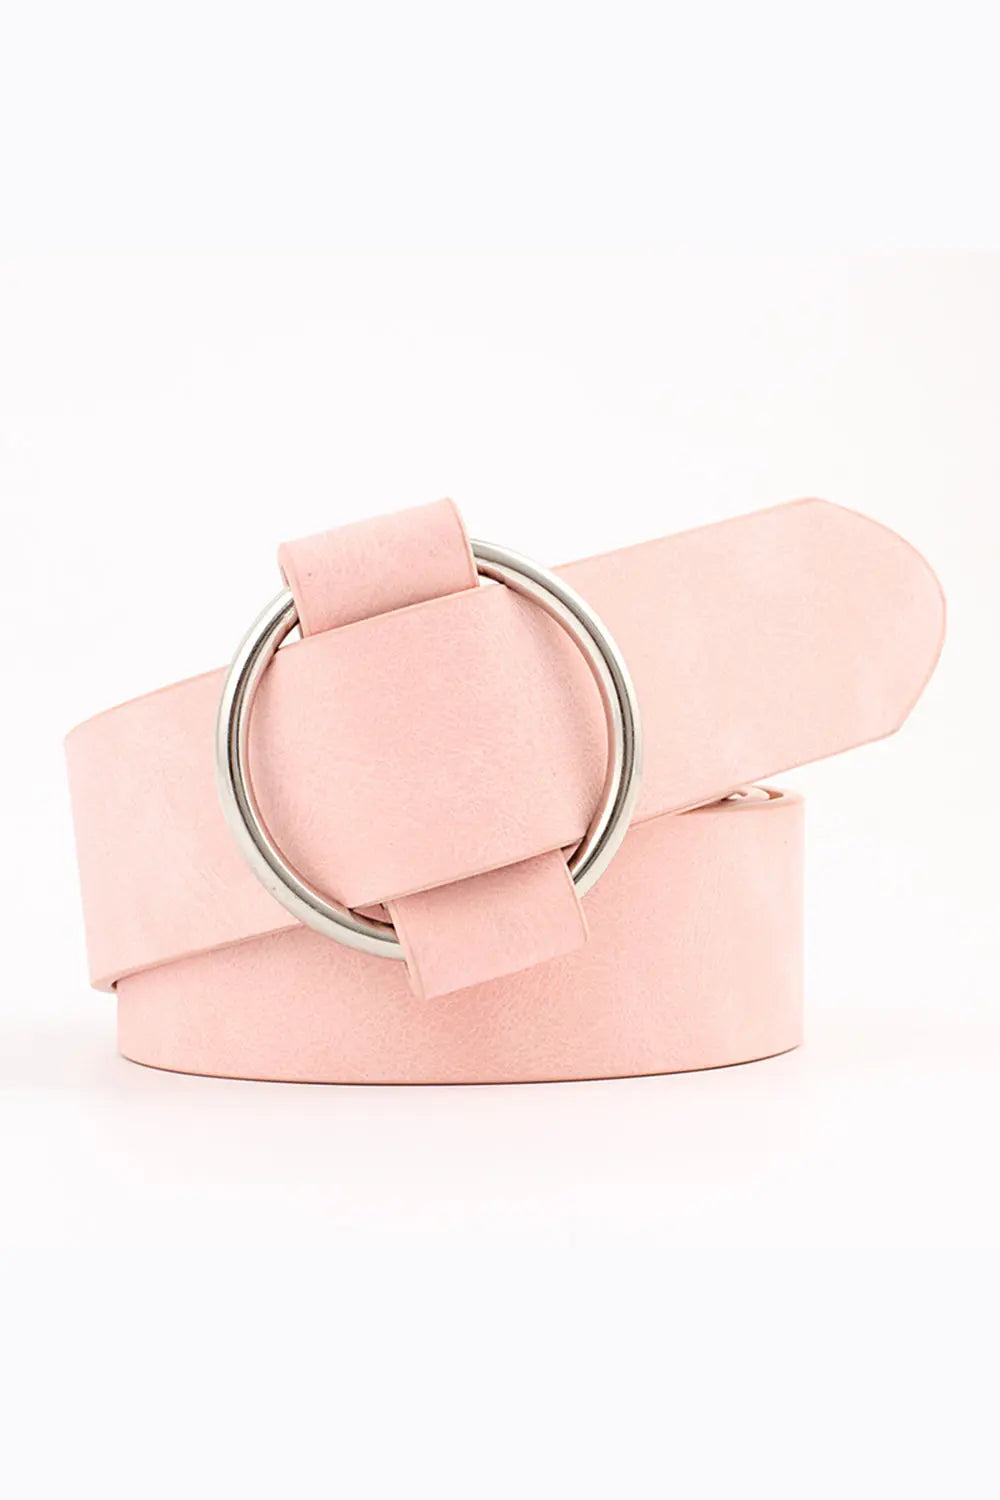 Needle-free Circle Belt - Pink - Strange Clothes